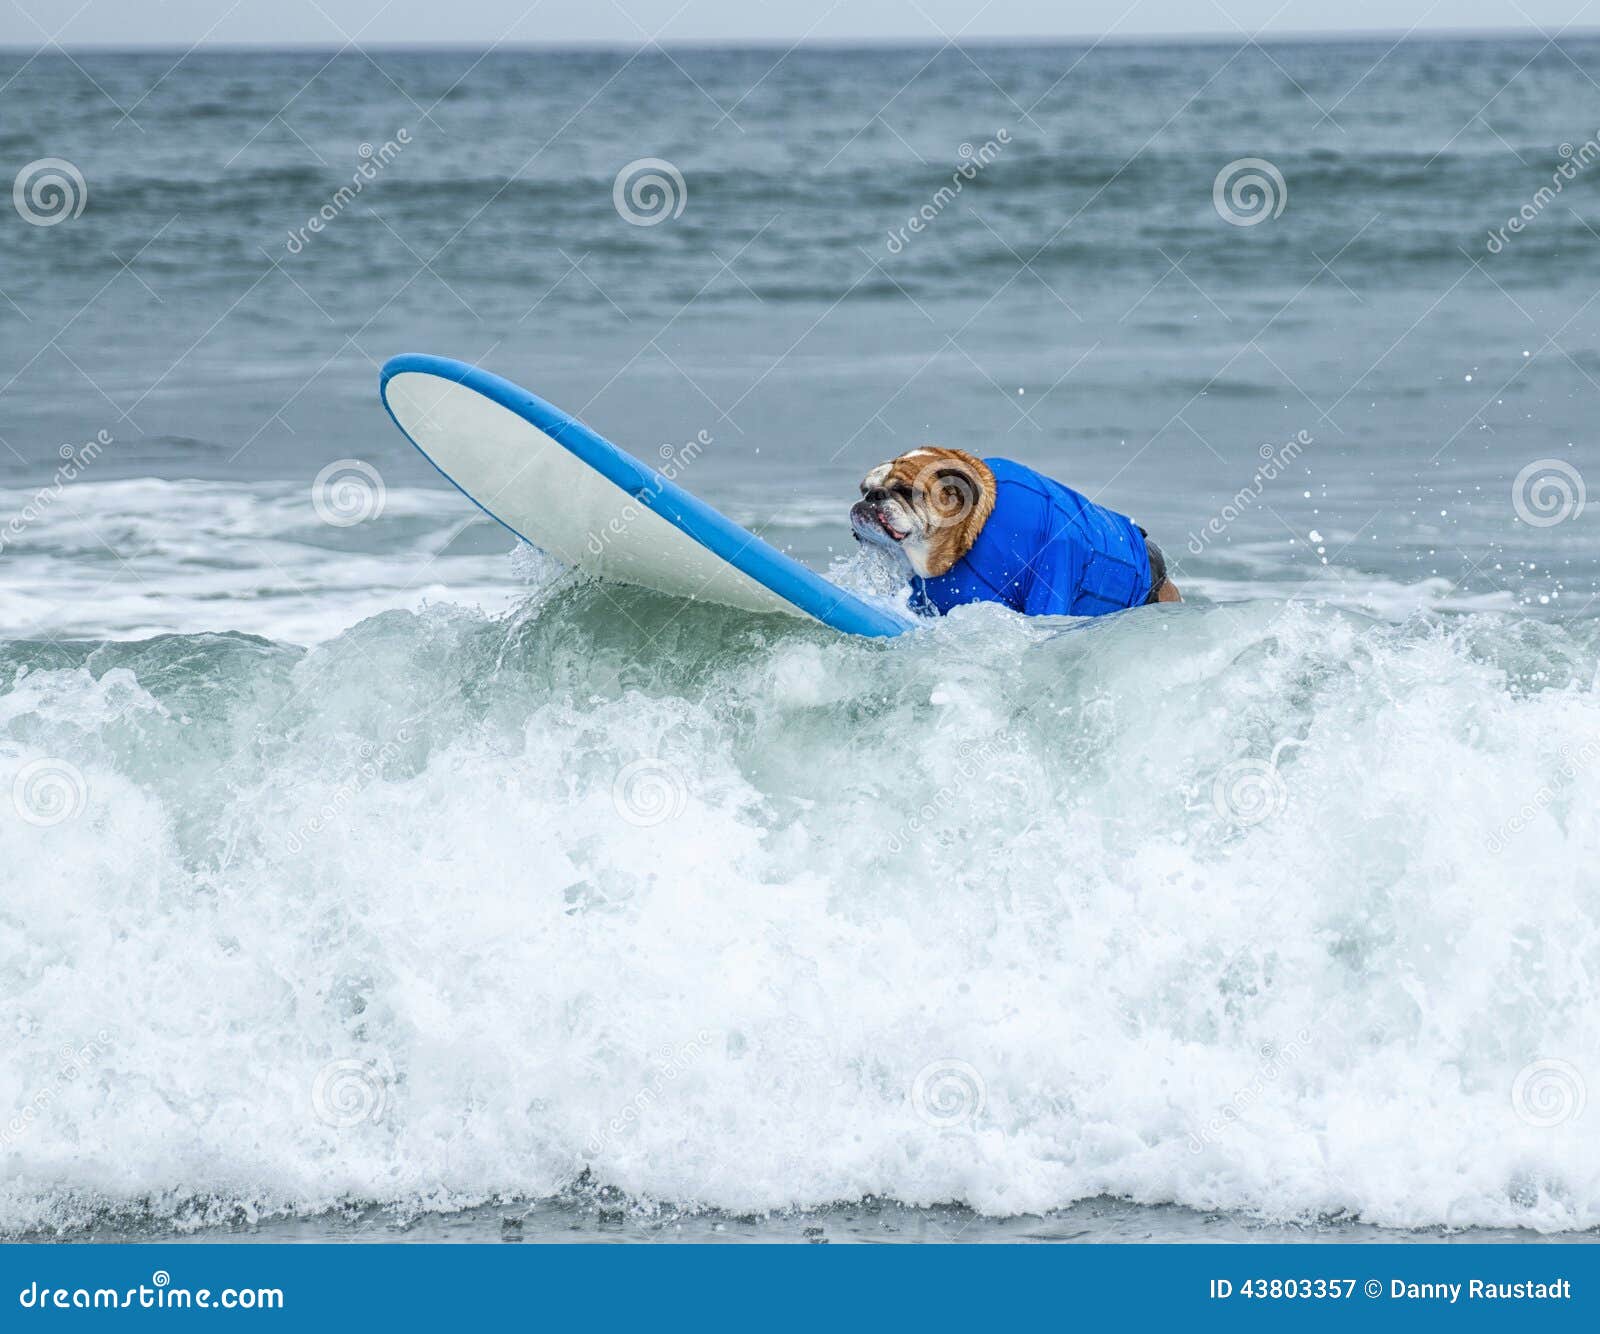 surf board surfer dog